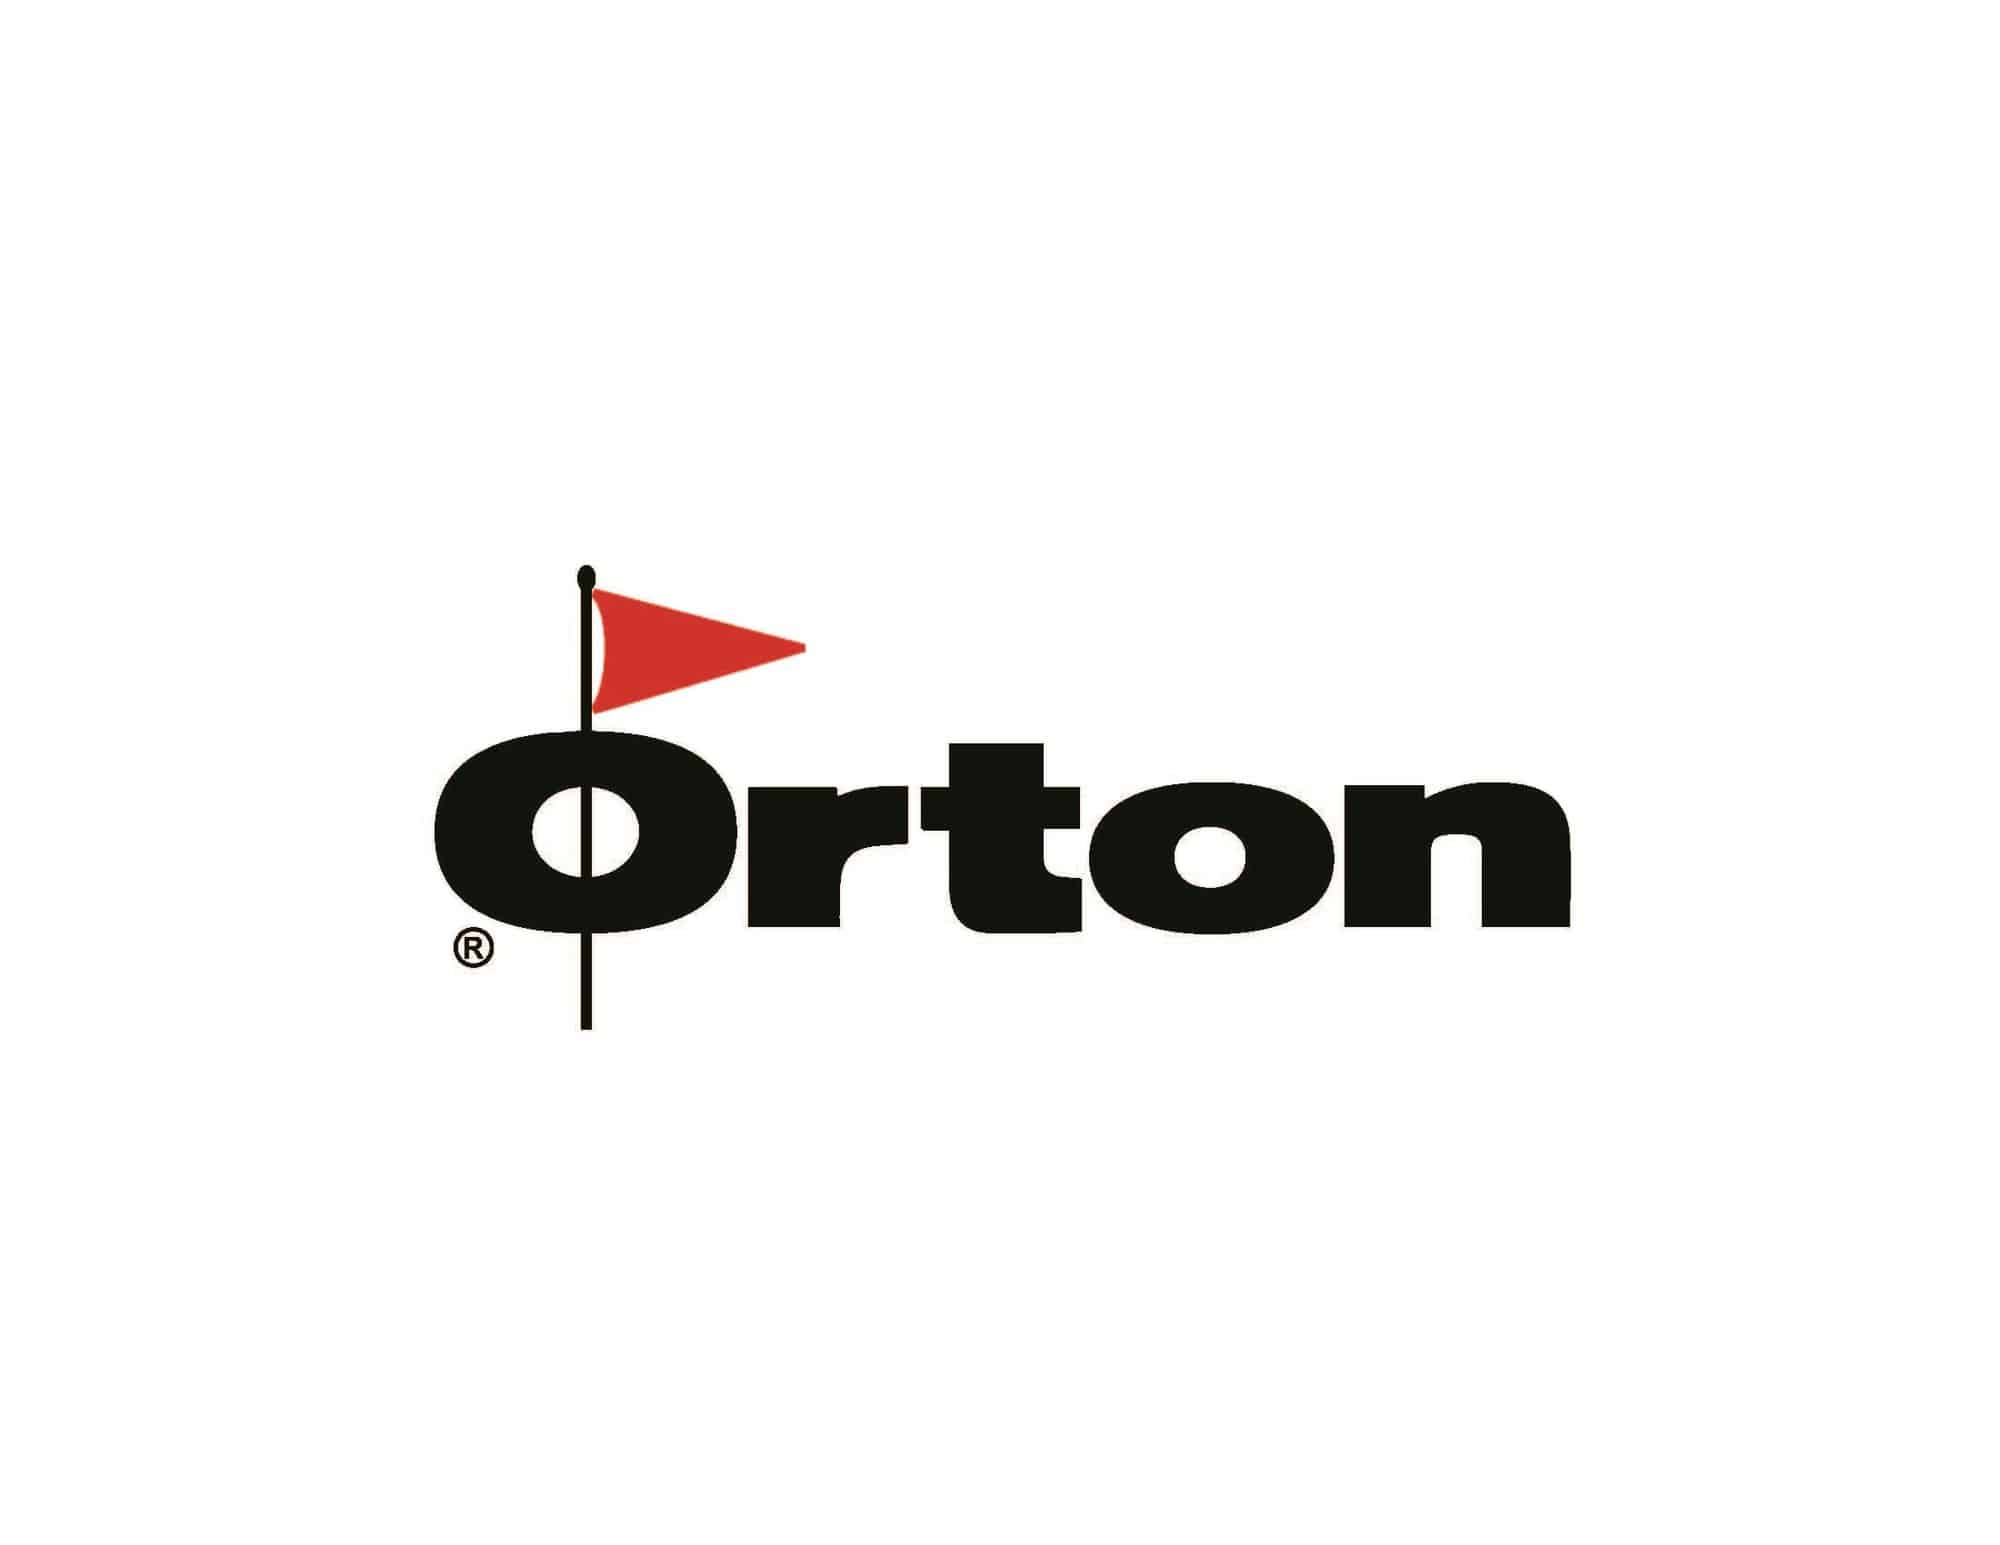 Edward orton 2015 logo